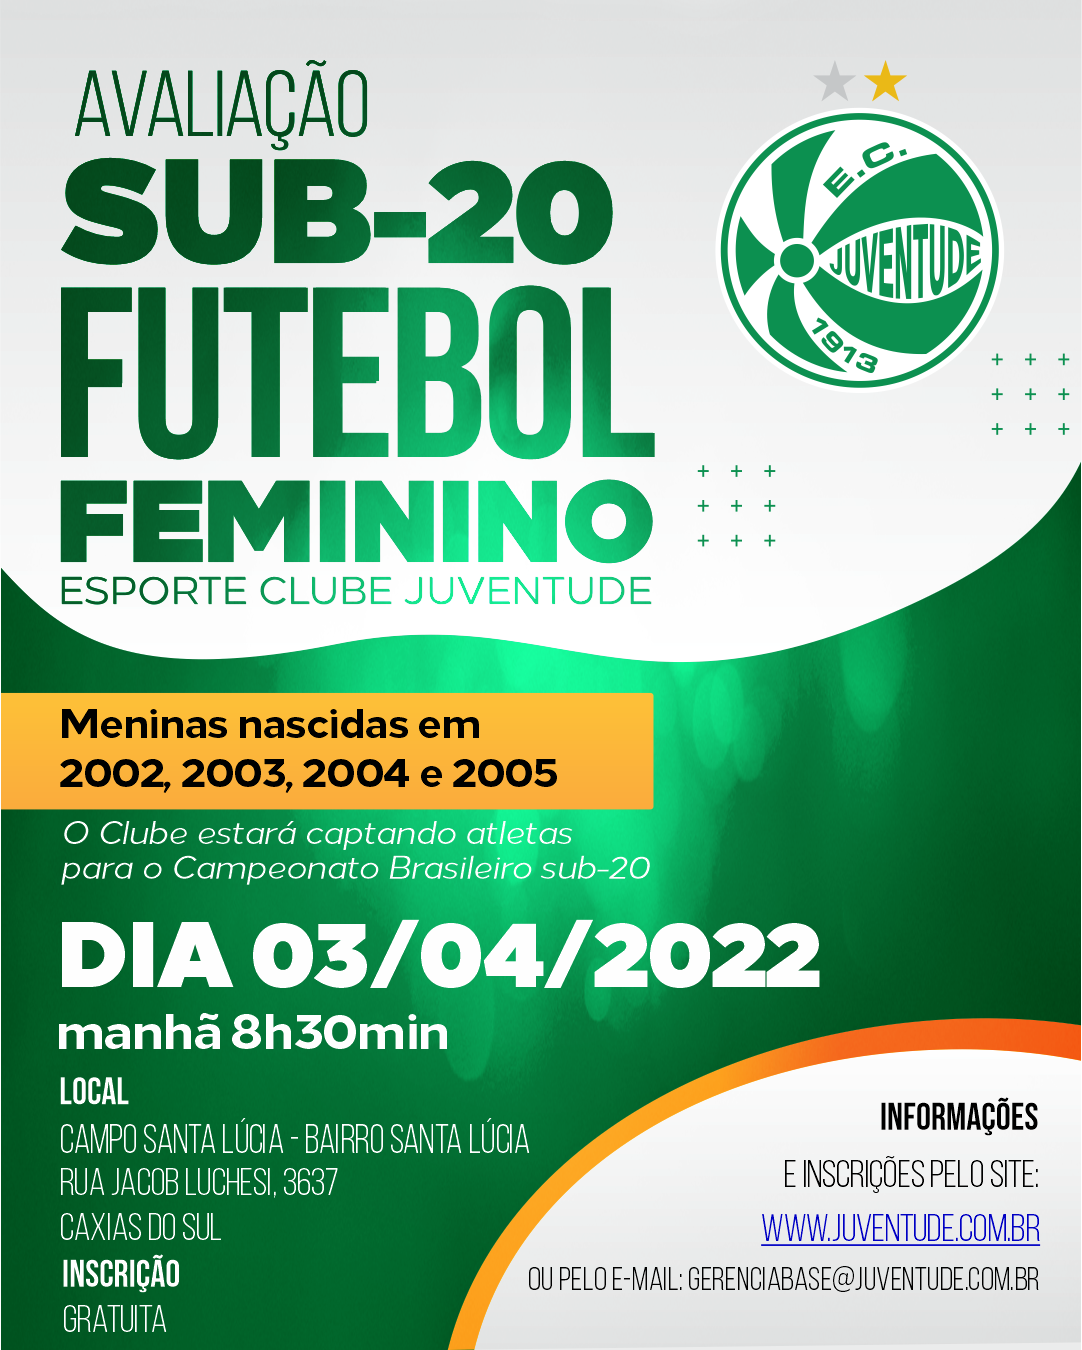 Avaliação - participe do processo seletivo para o futebol feminino 2022